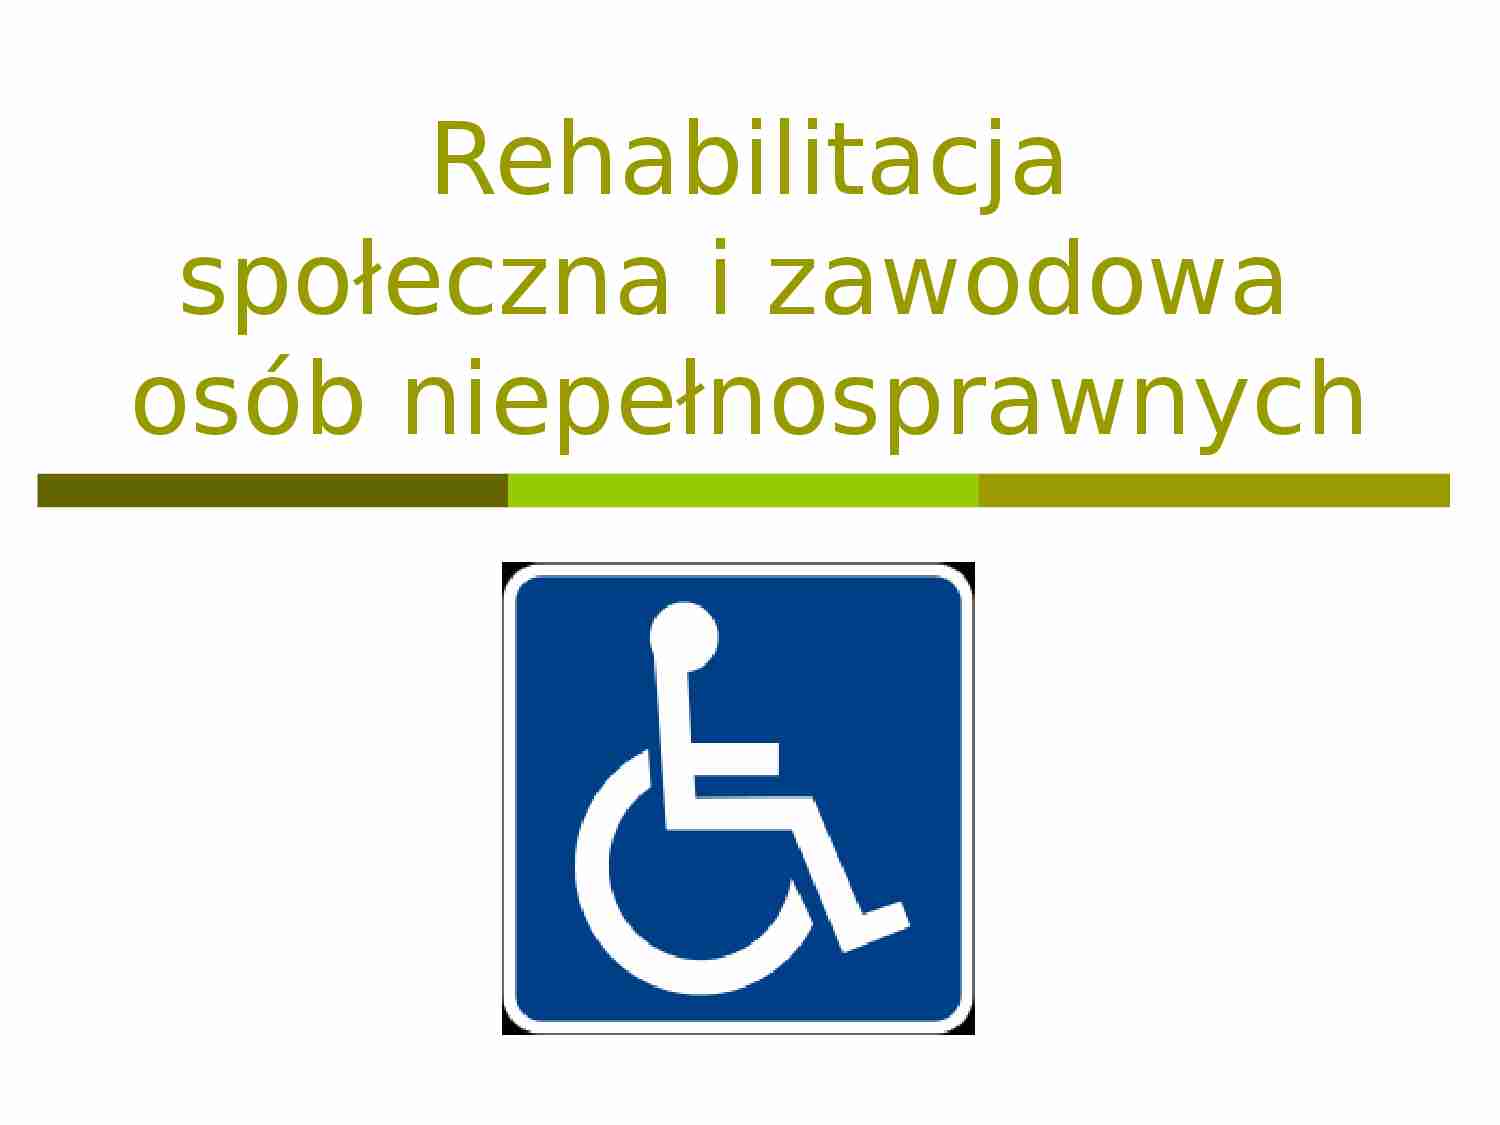 Rehabilitacja społeczna i zawodowa osób niepełnosprawnych - strona 1